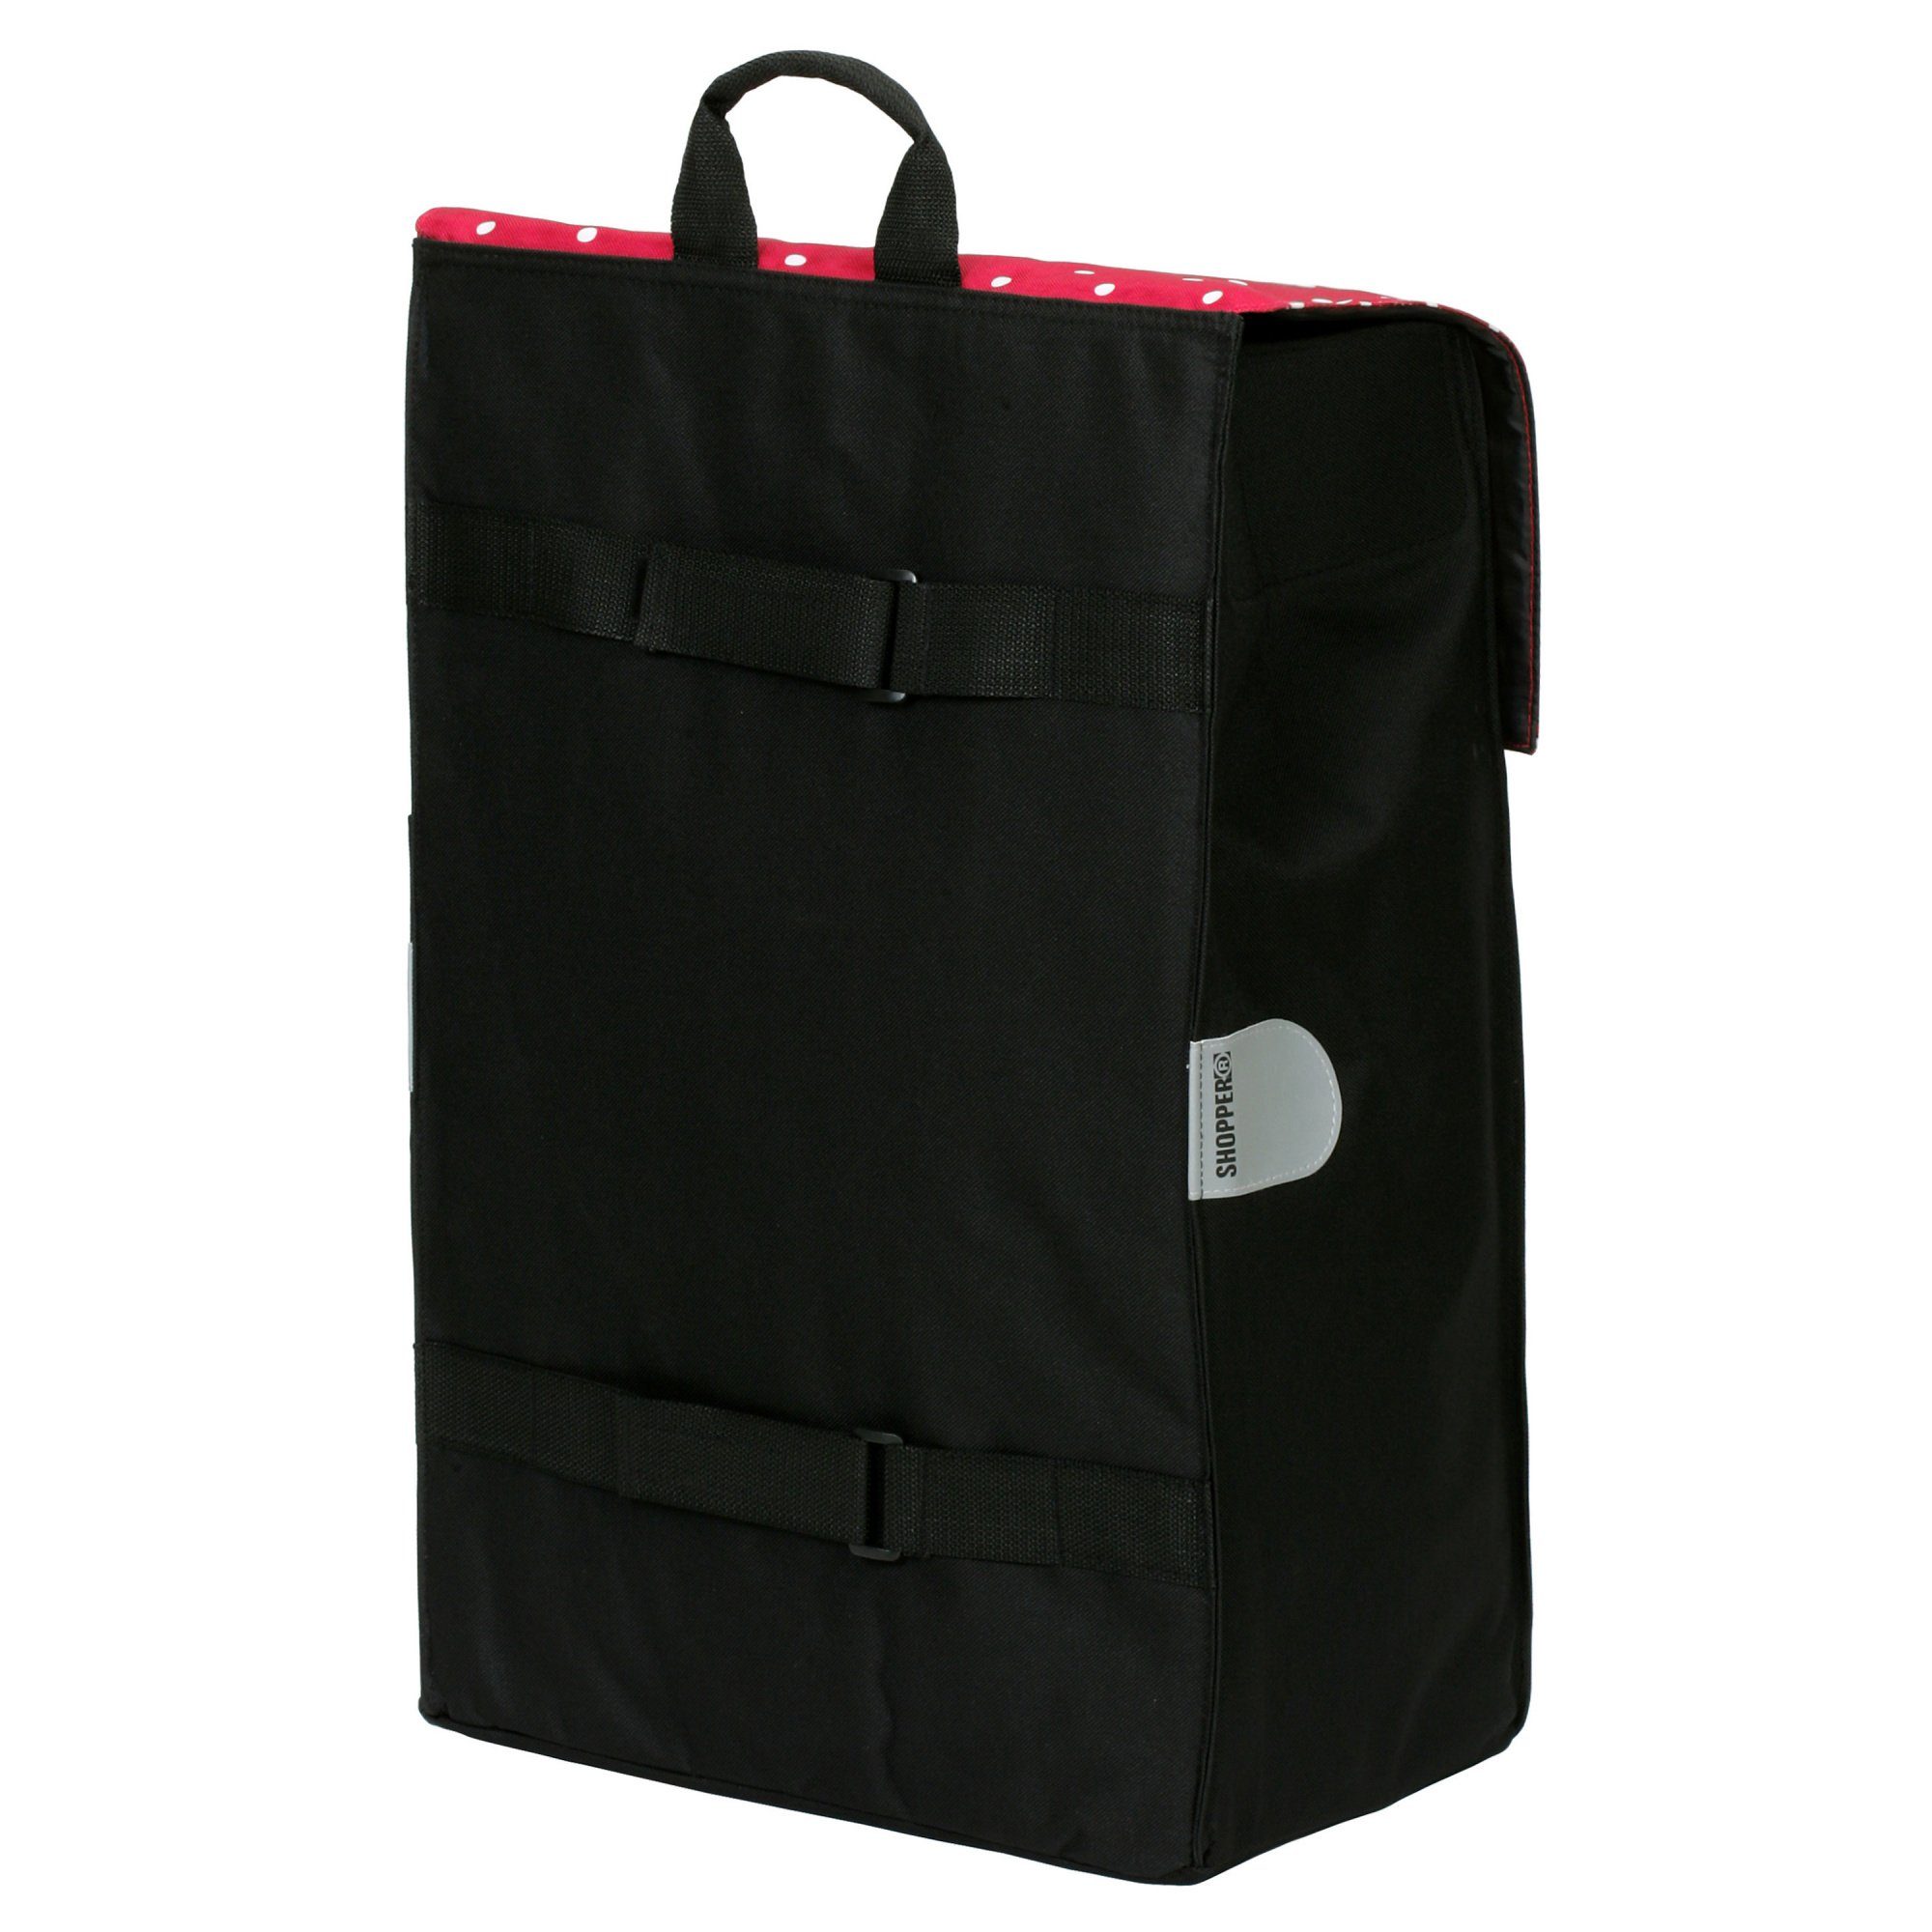 Andersen Einkaufstrolley Alu Tasche in Rot Schwarz, Shopper oder Malit Leicht Sehr mit Star